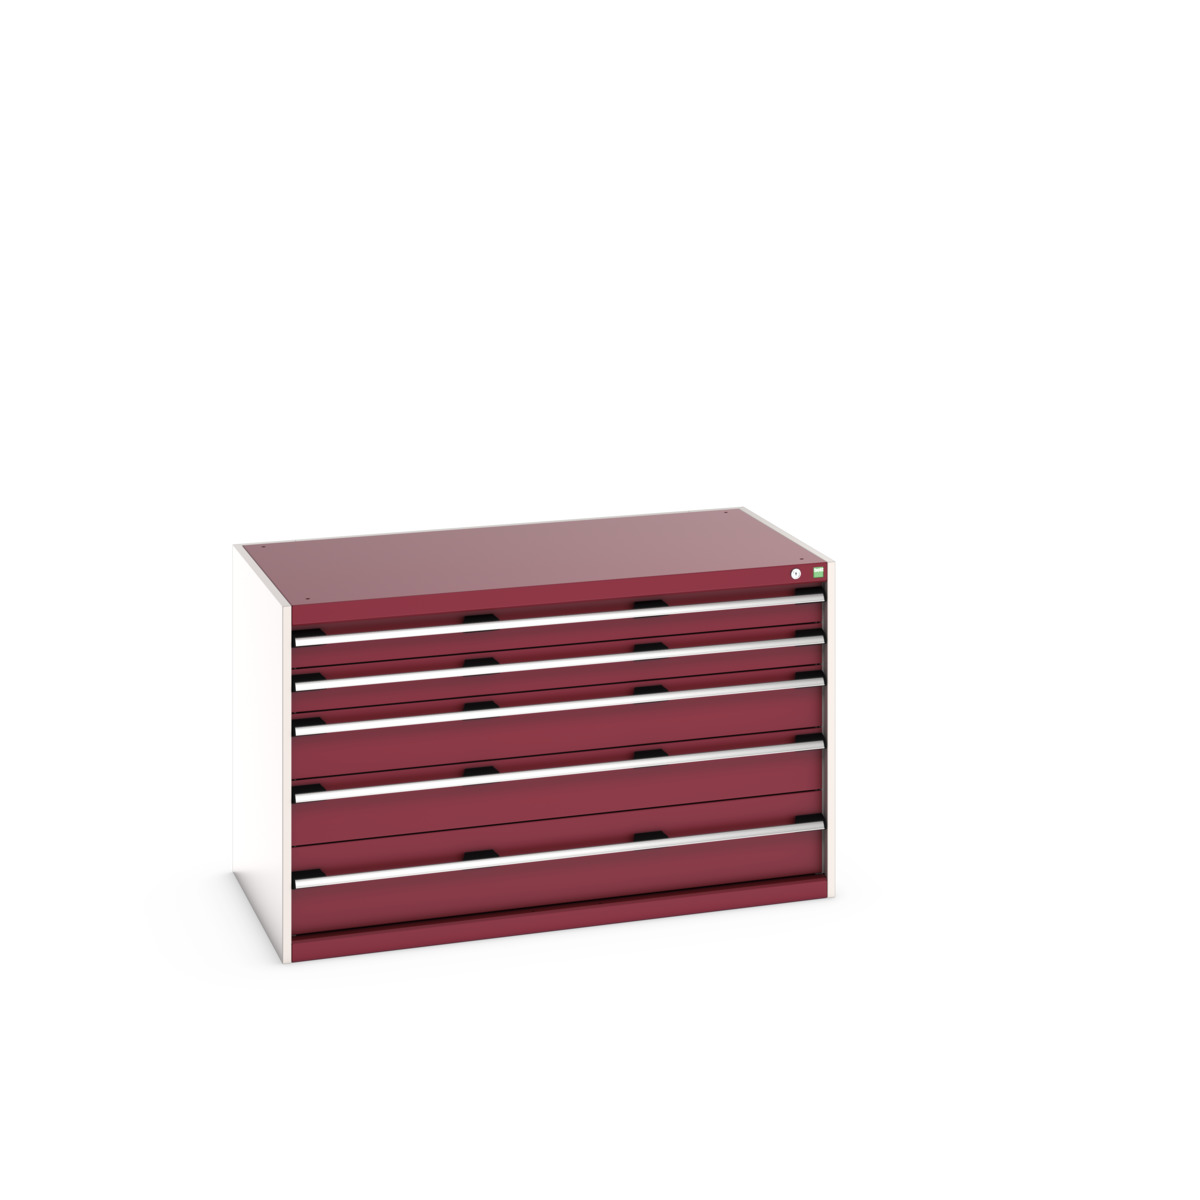 40030007.24V - cubio drawer cabinet